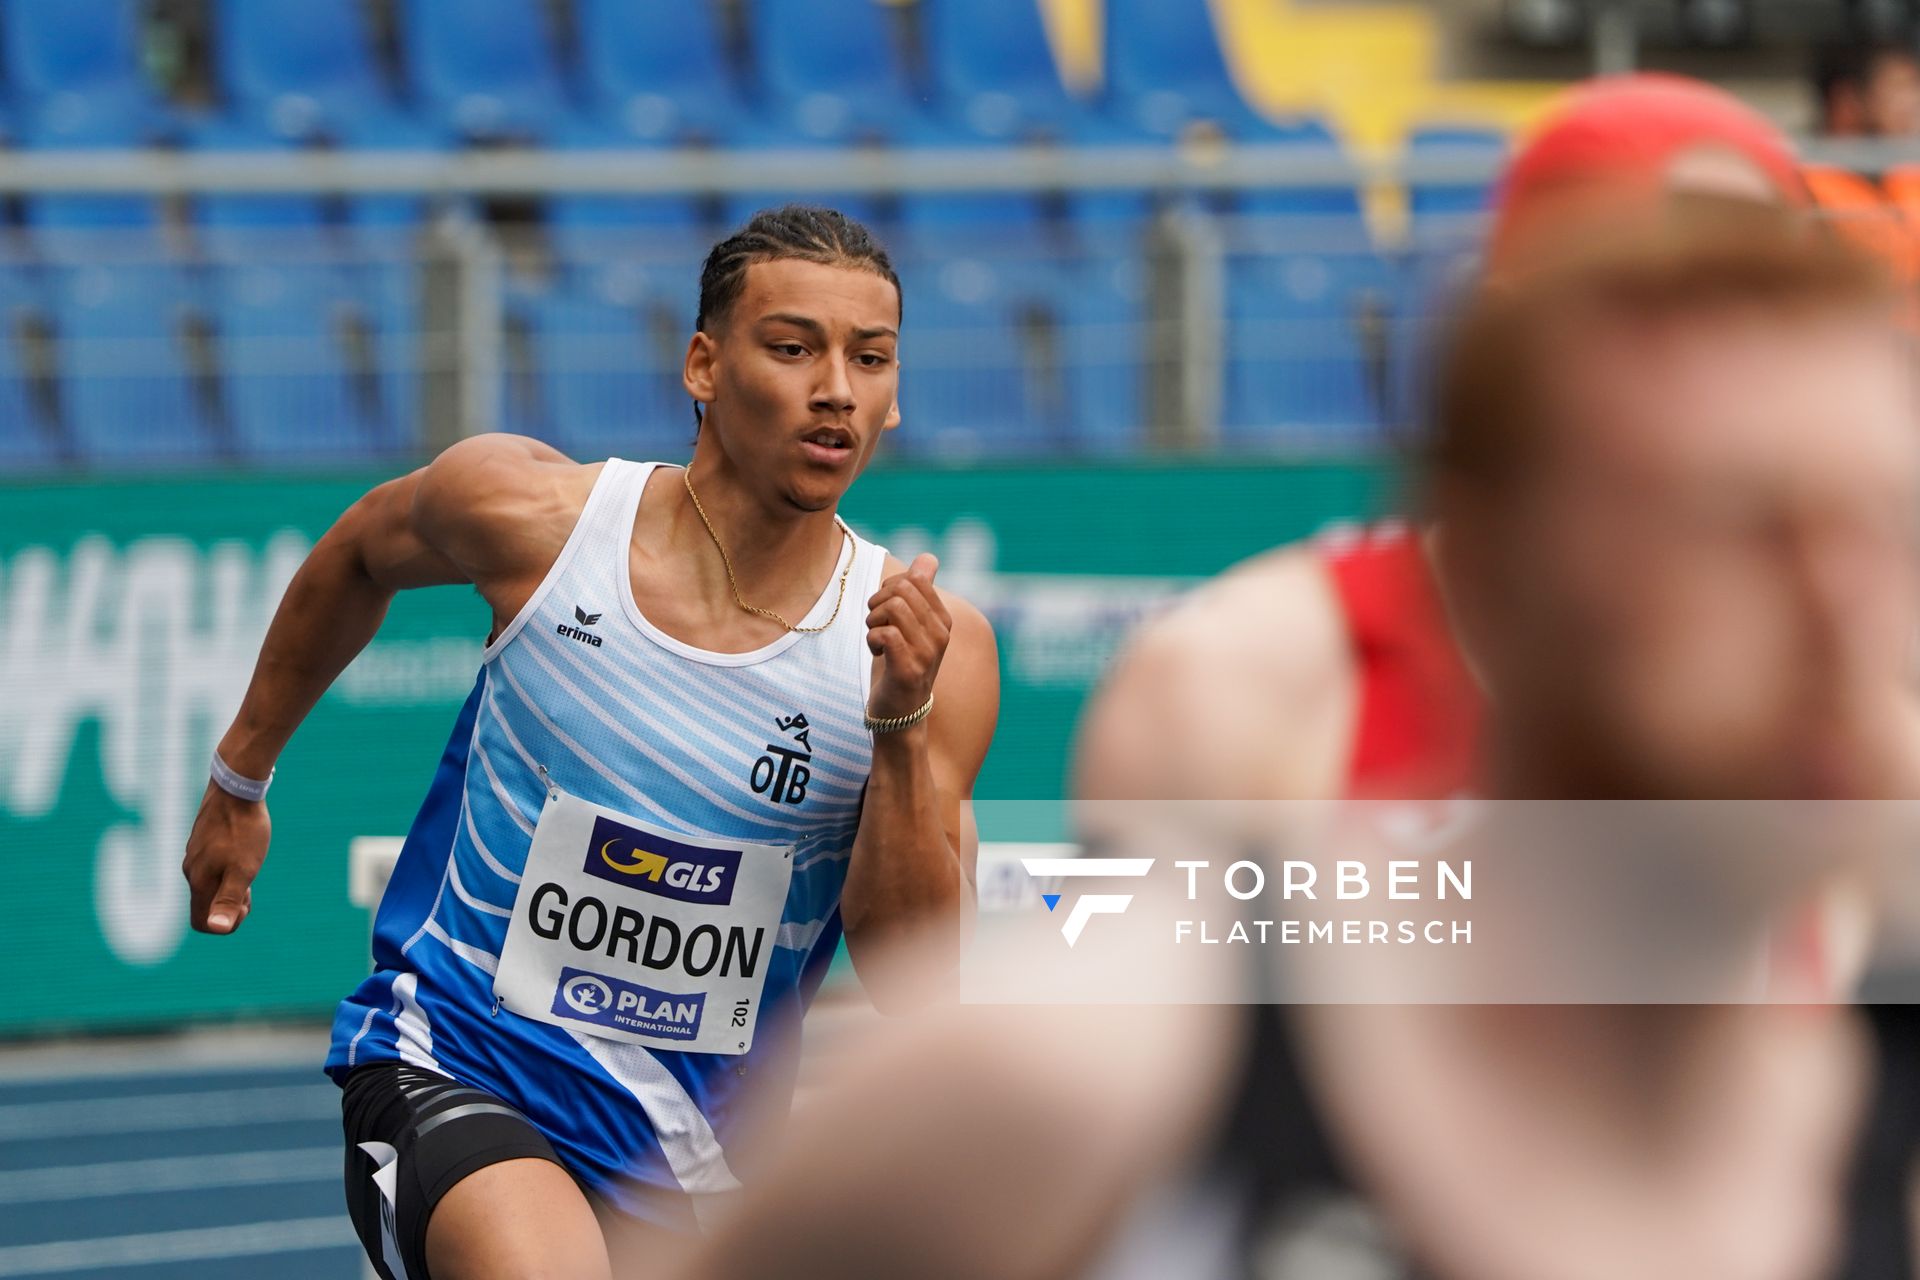 Jordan Gordon (OTB Osnabrueck) im Vorlauf ueber 400m Huerden am 05.06.2021 waehrend den deutschen Leichtathletik-Meisterschaften 2021 im Eintracht-Stadion in Braunschweig